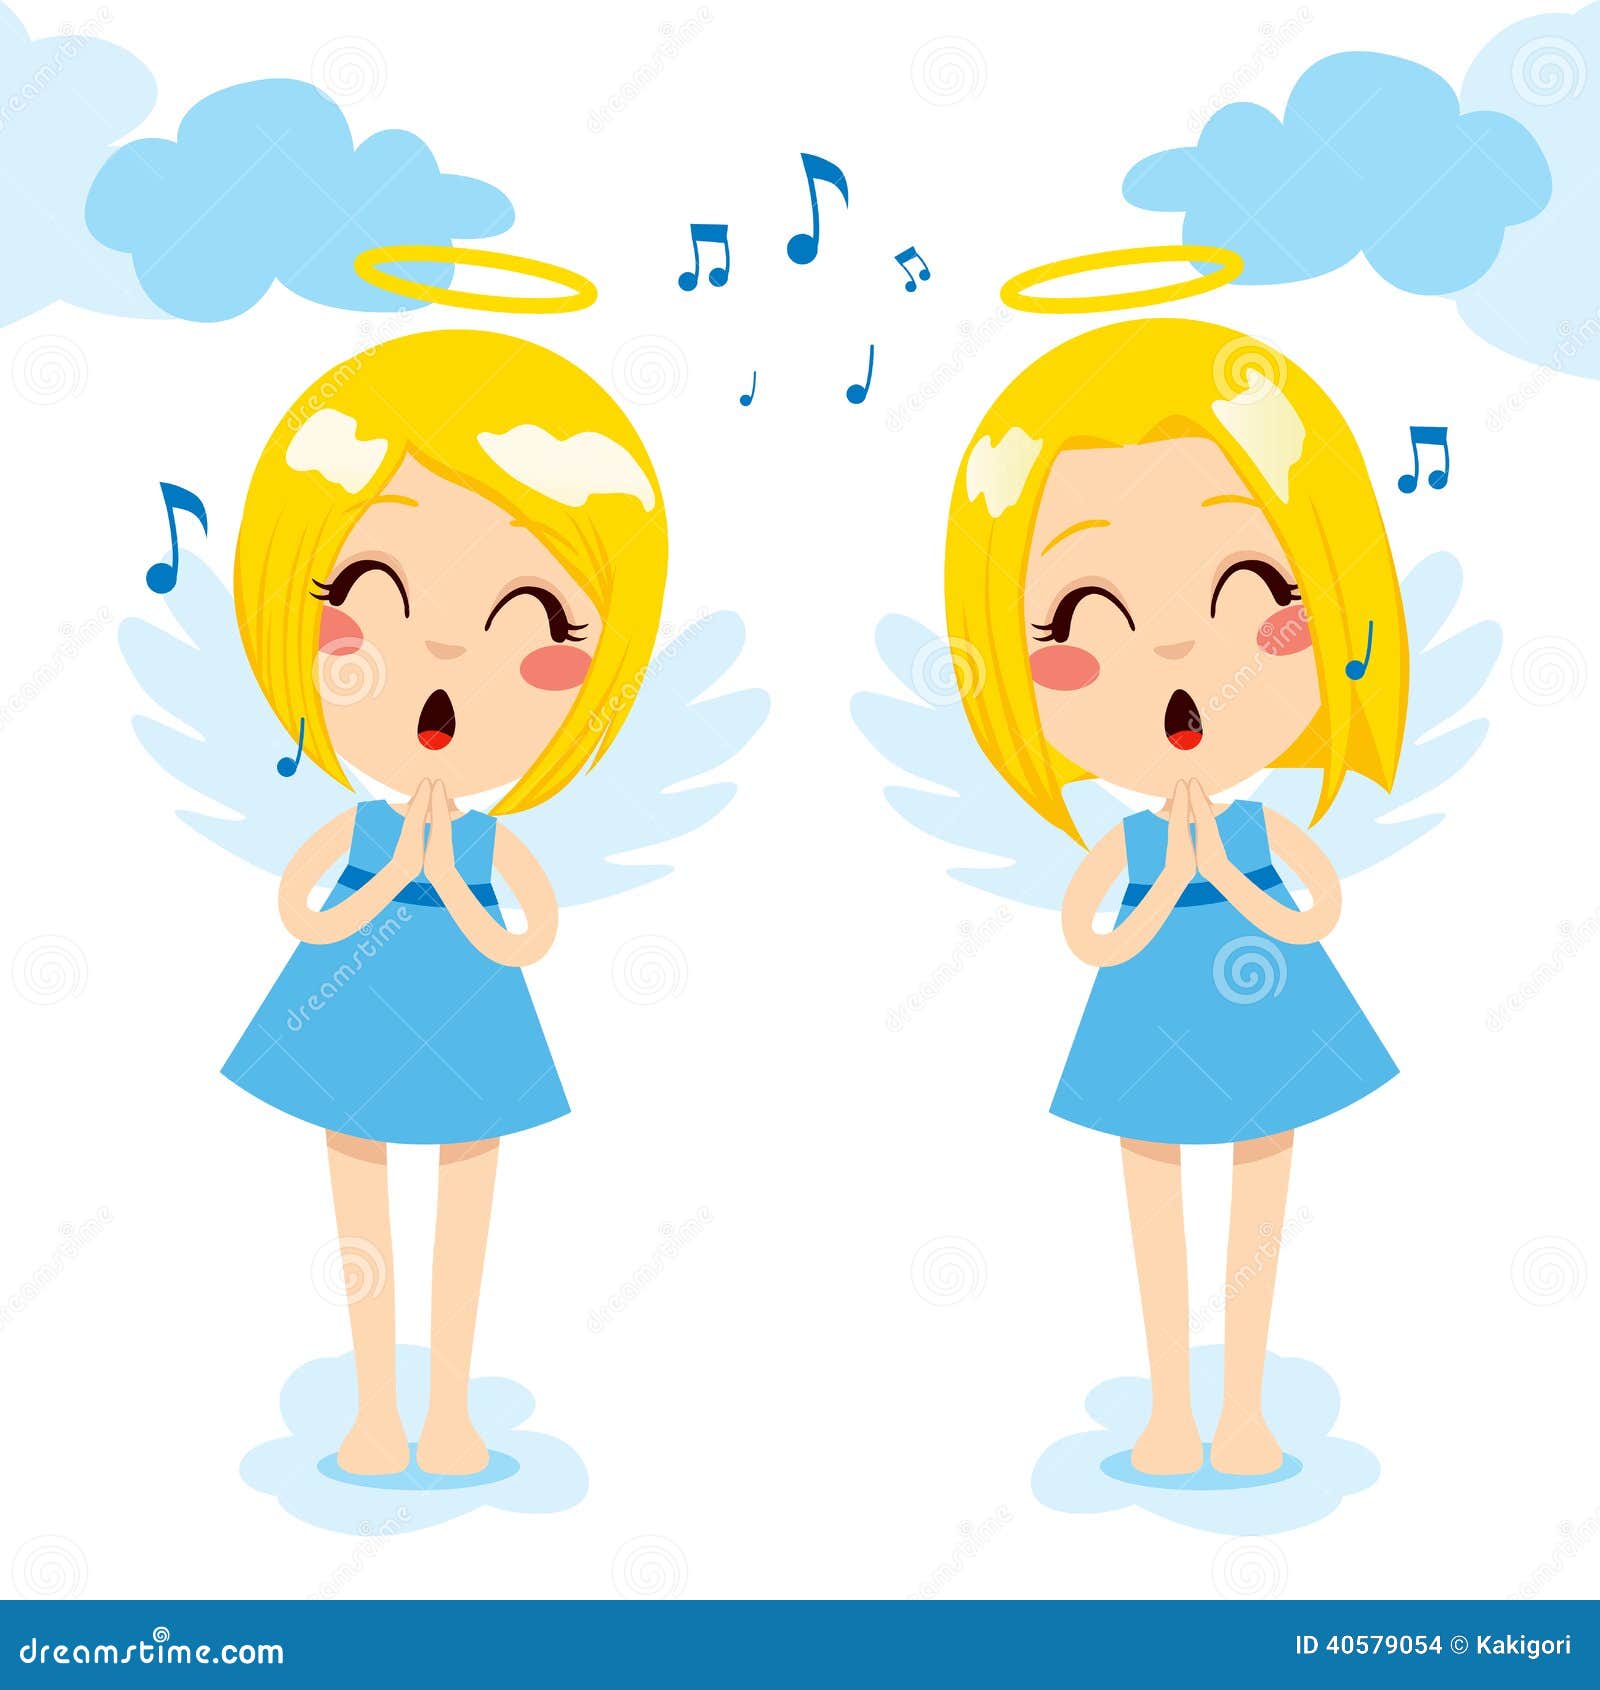 Я счастливый и пою. Вектор Поющие ангелочки. Поющий человек счастливый вектор. Девочка поет ангел.